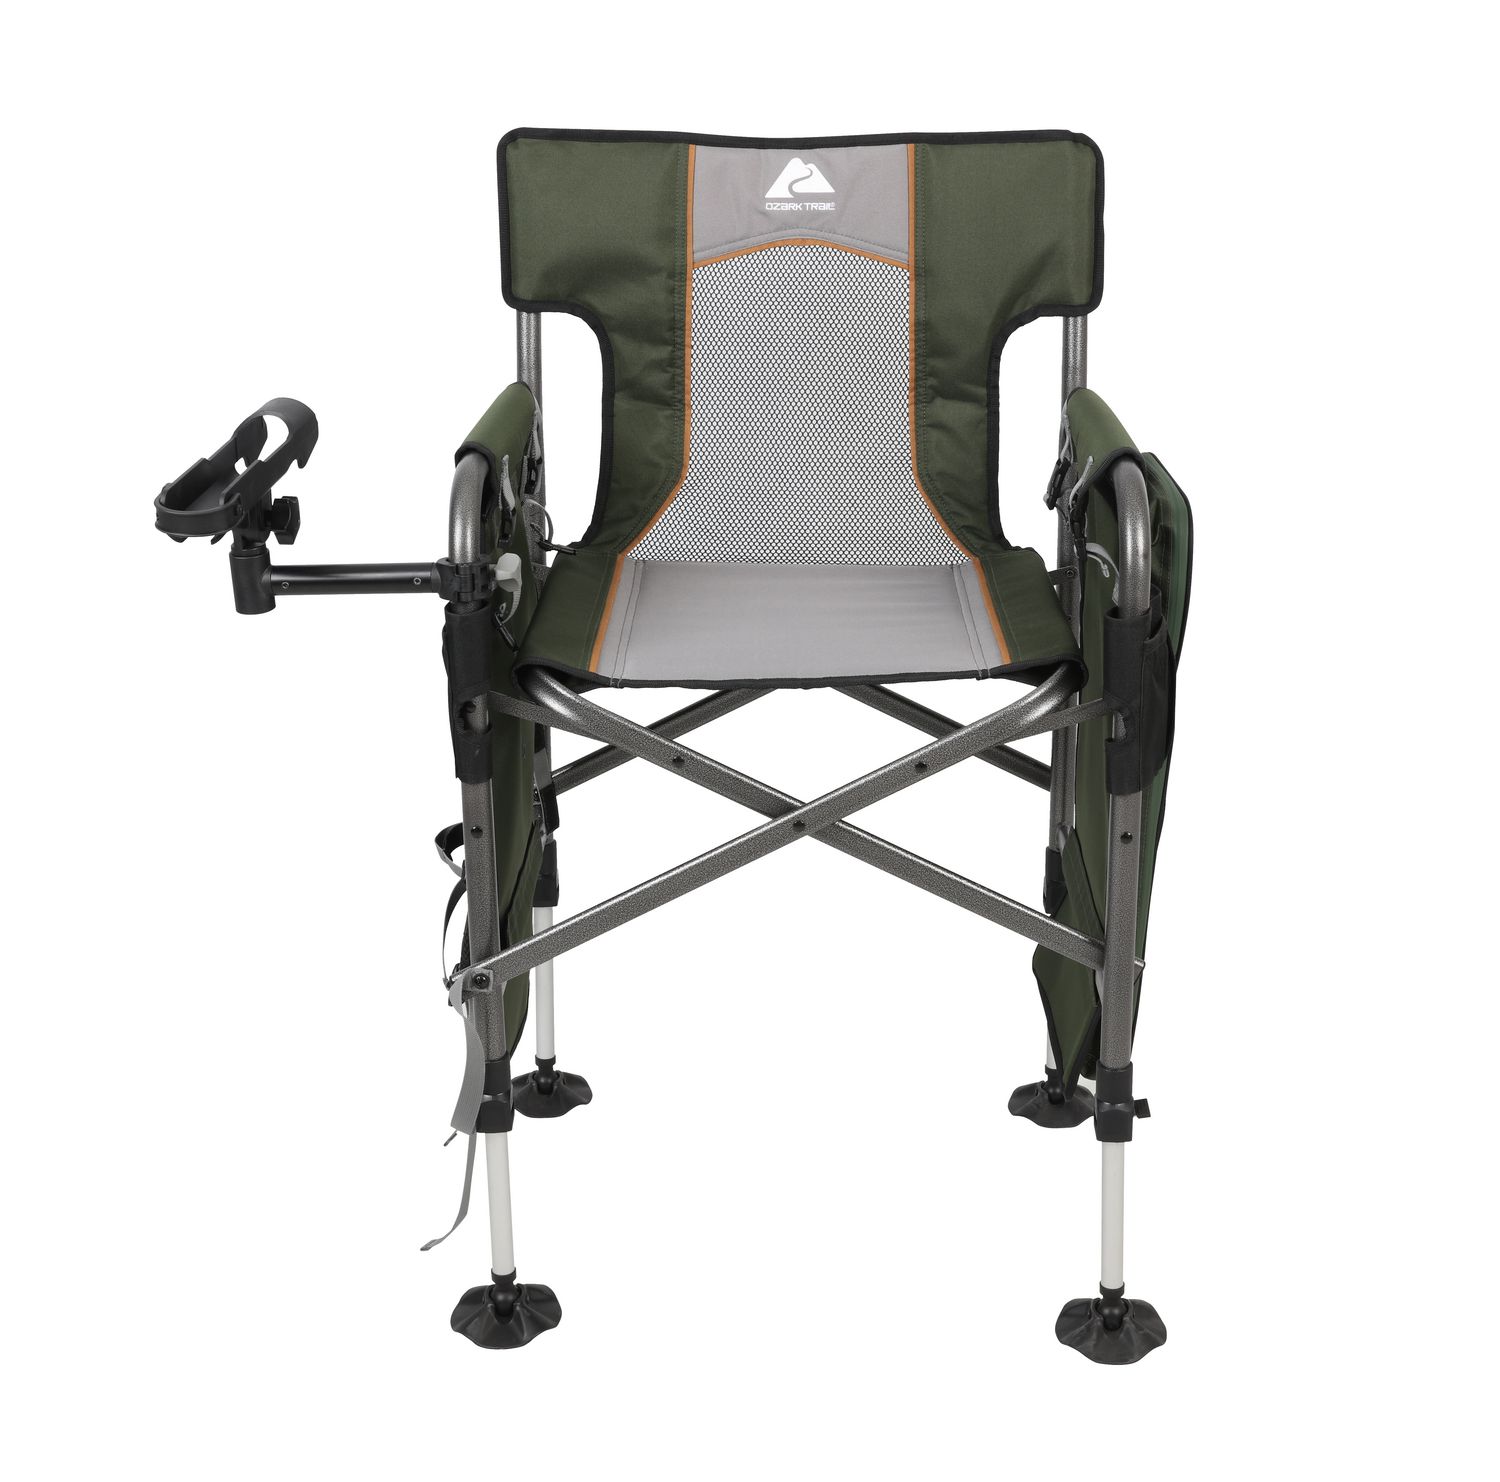 SHENXINCI Fishing Chair,chair for Outdoor Camping Fishing Hiking